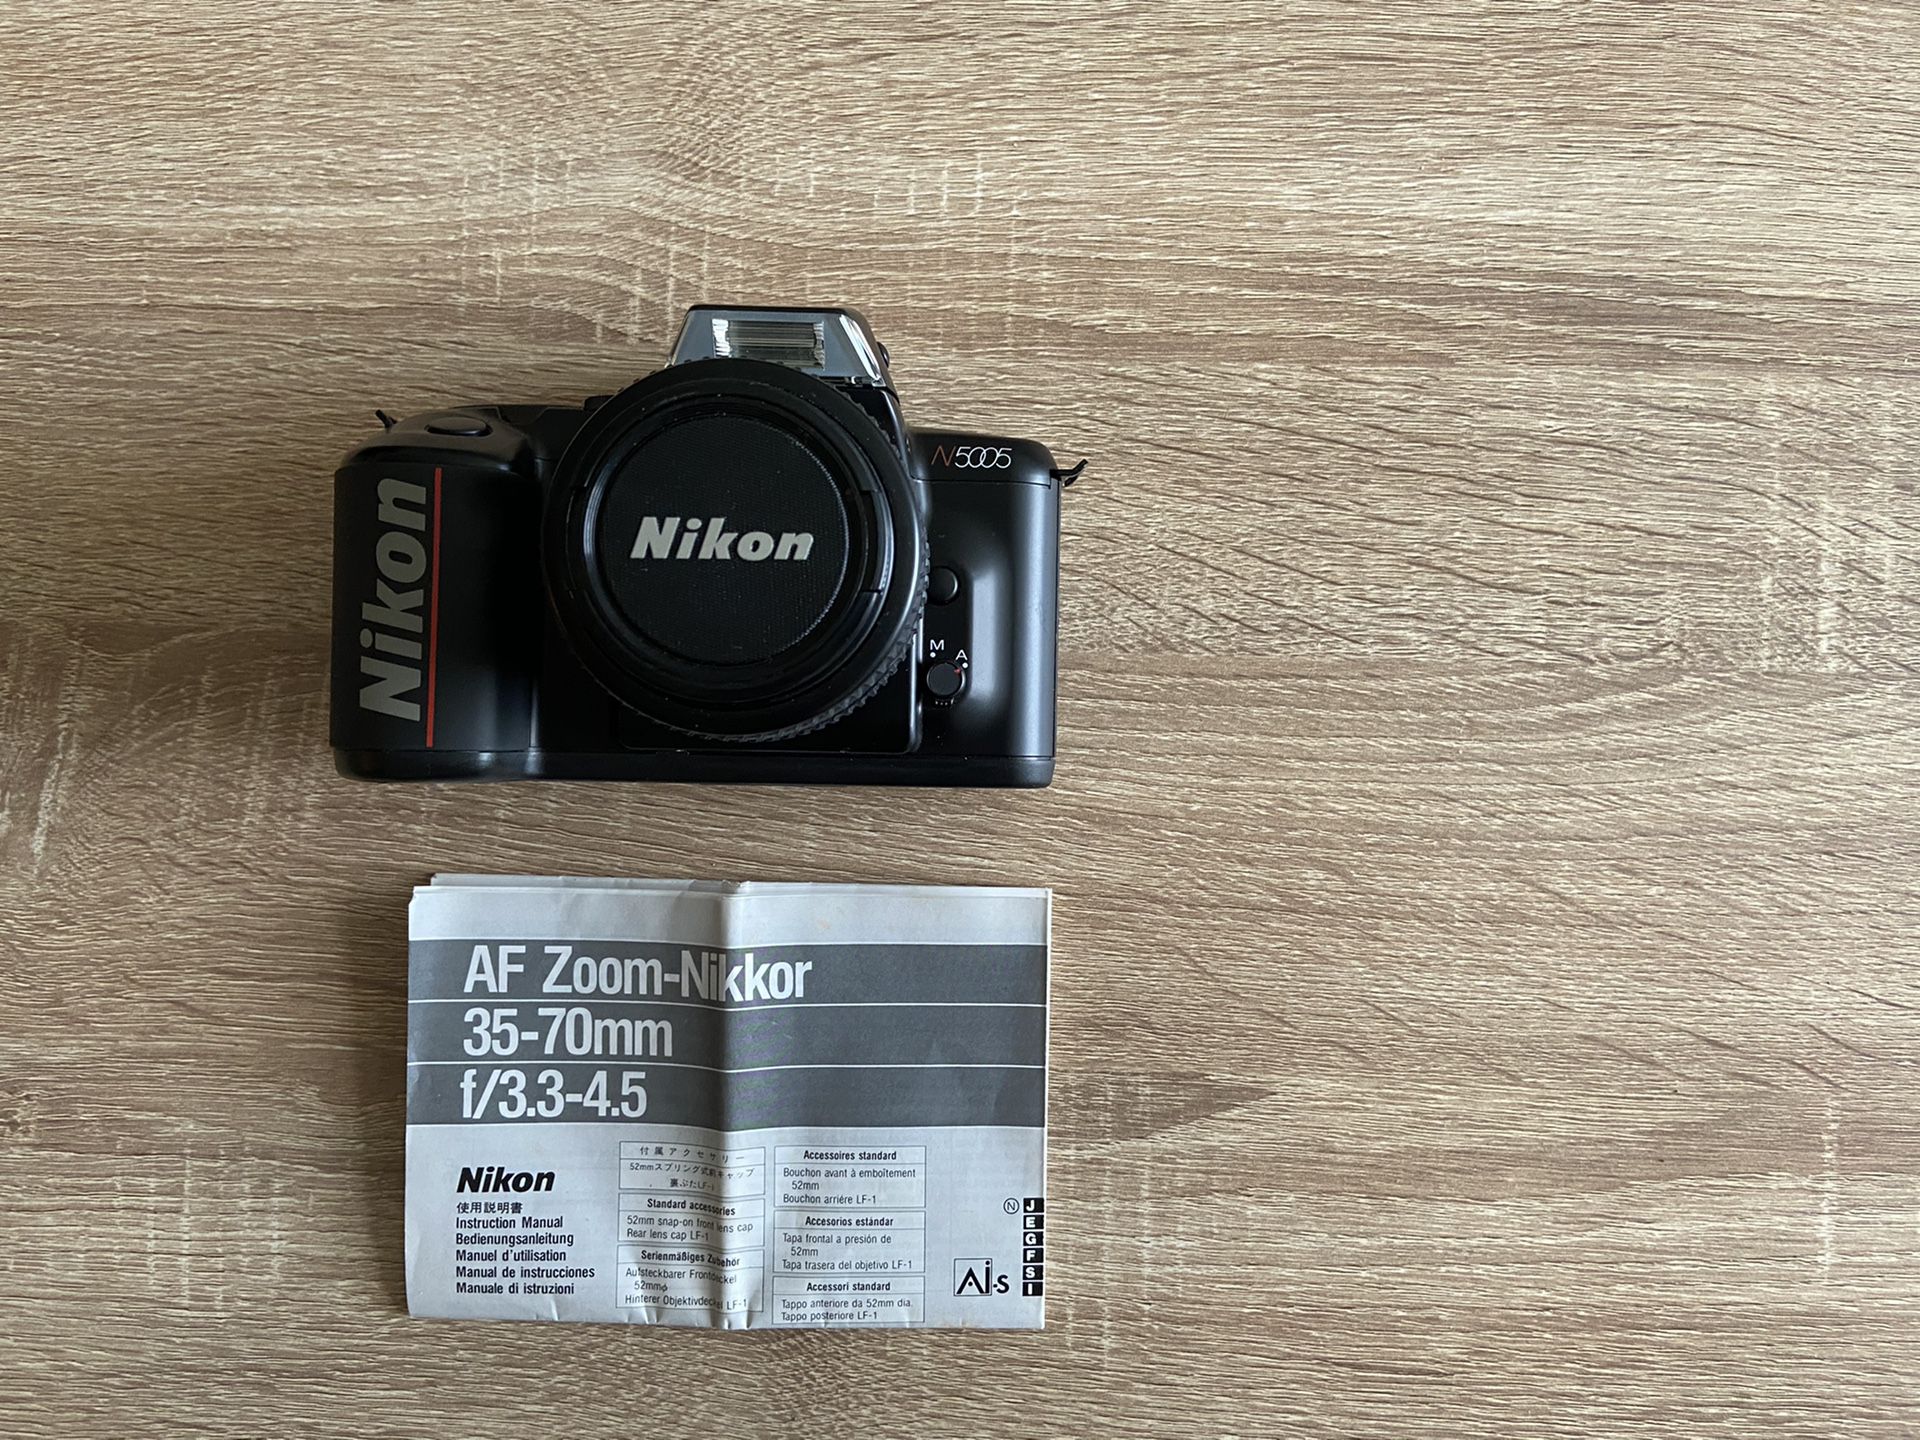 Nikon Camera N5005 / print film